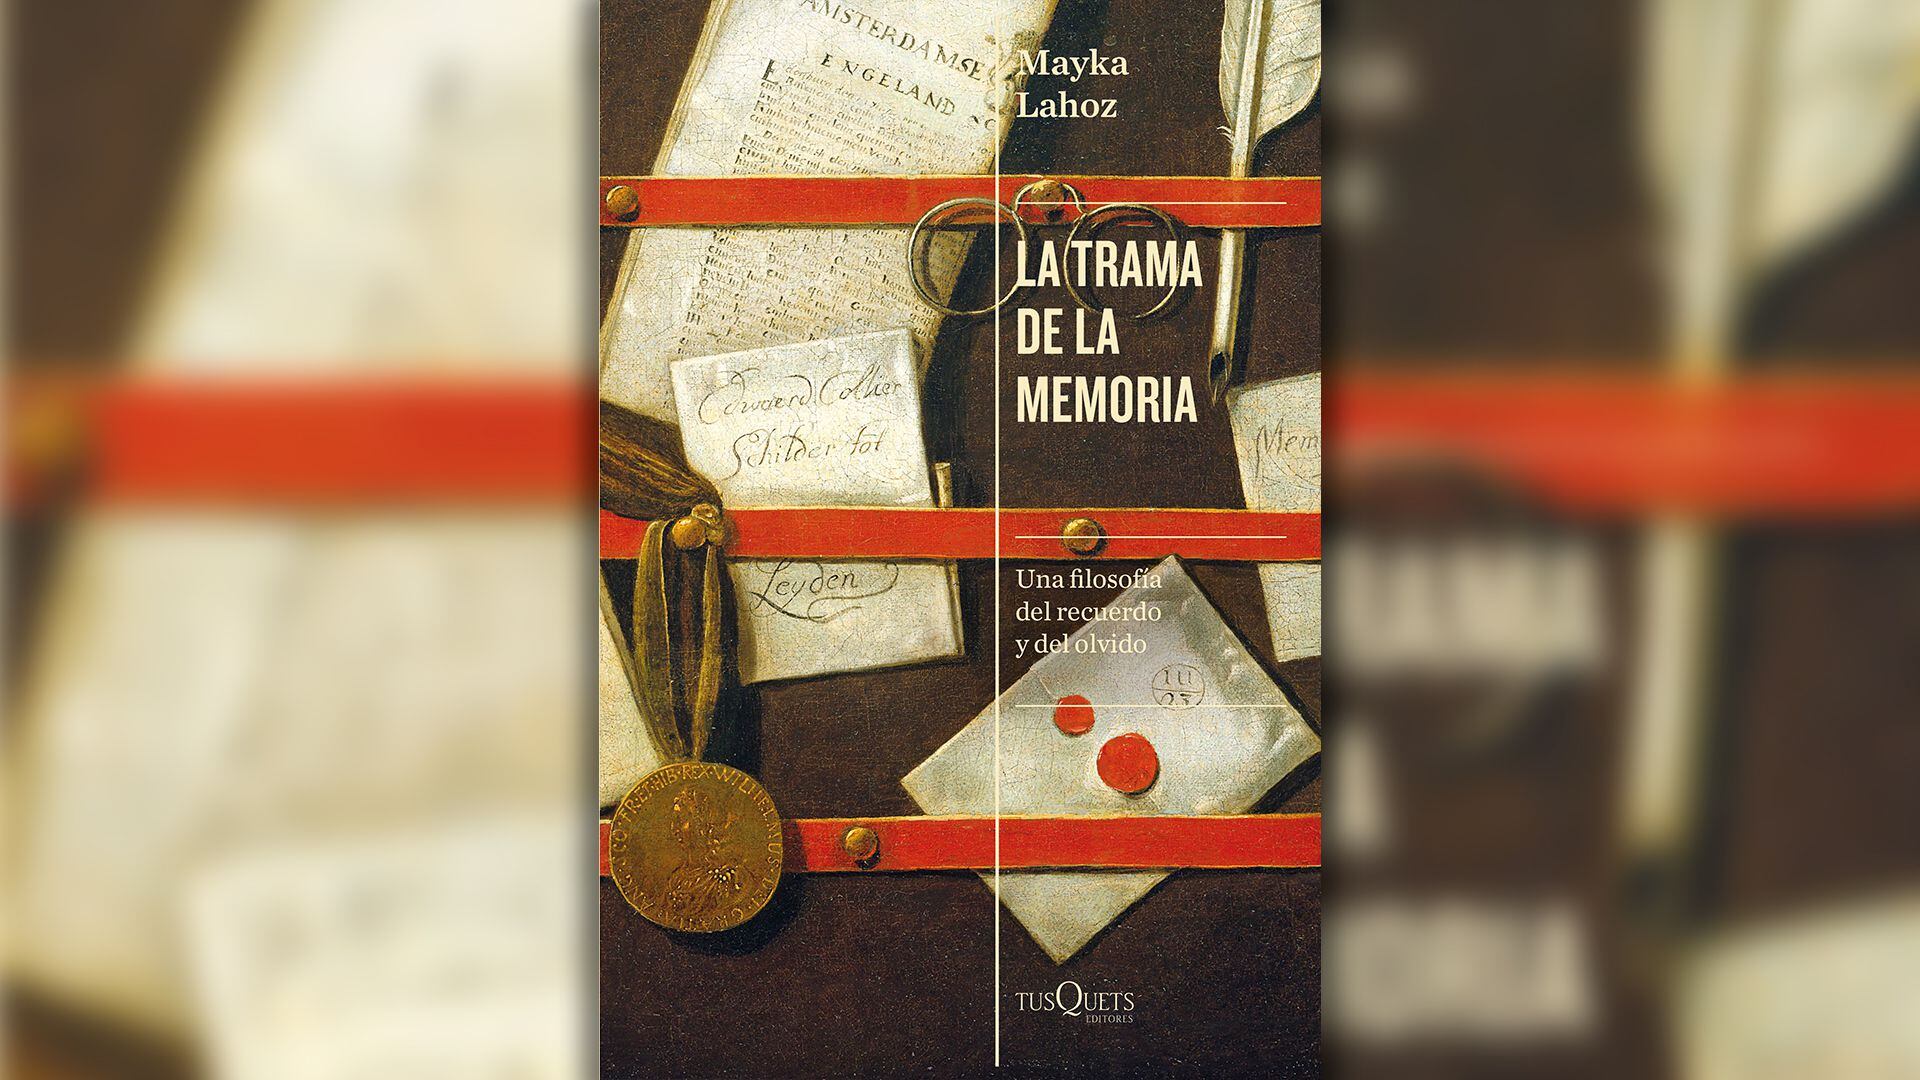 Portada del libro “La trama de la memoria” de Mayka Lahoz (Infobae)